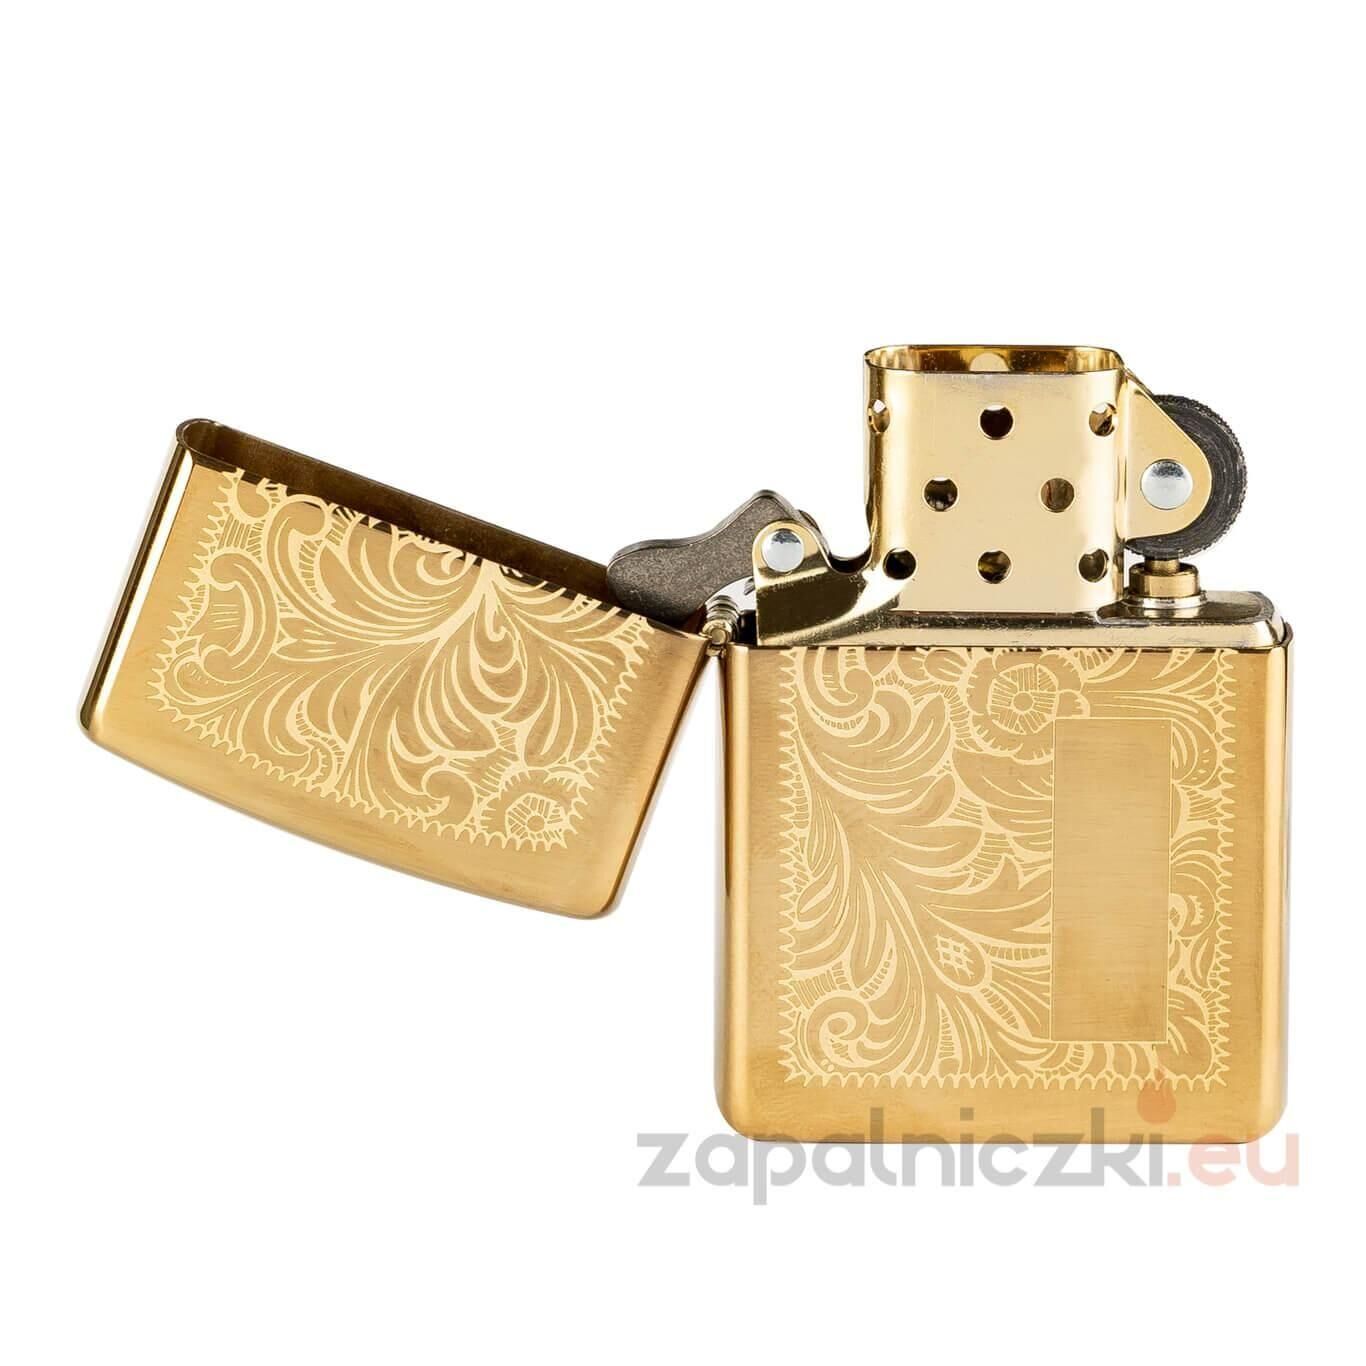 Zippo 352B Venetian High Polish Brass